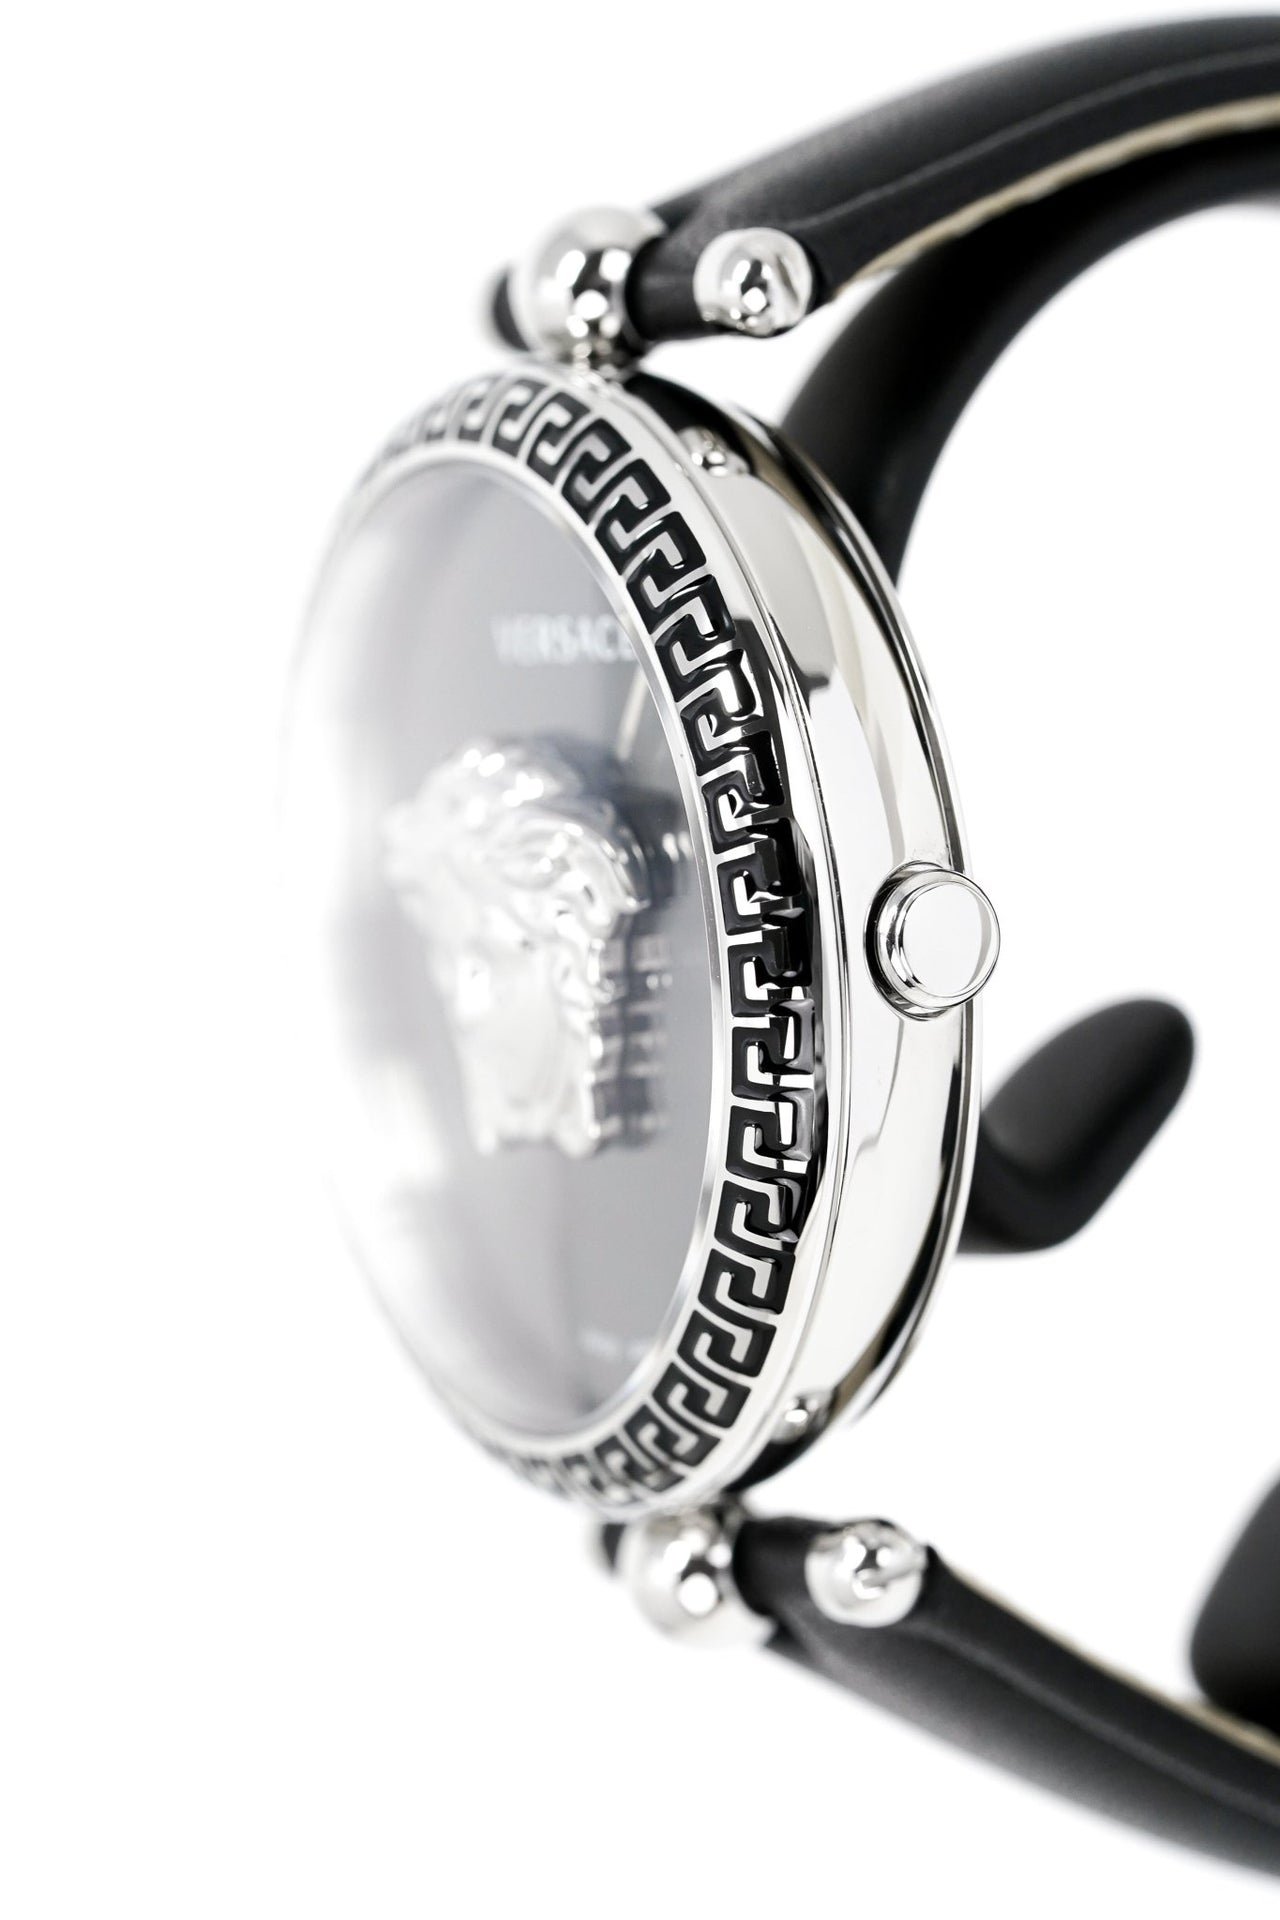 Versace Ladies Watch Palazzo Empire Black VECO01622 - Watches & Crystals